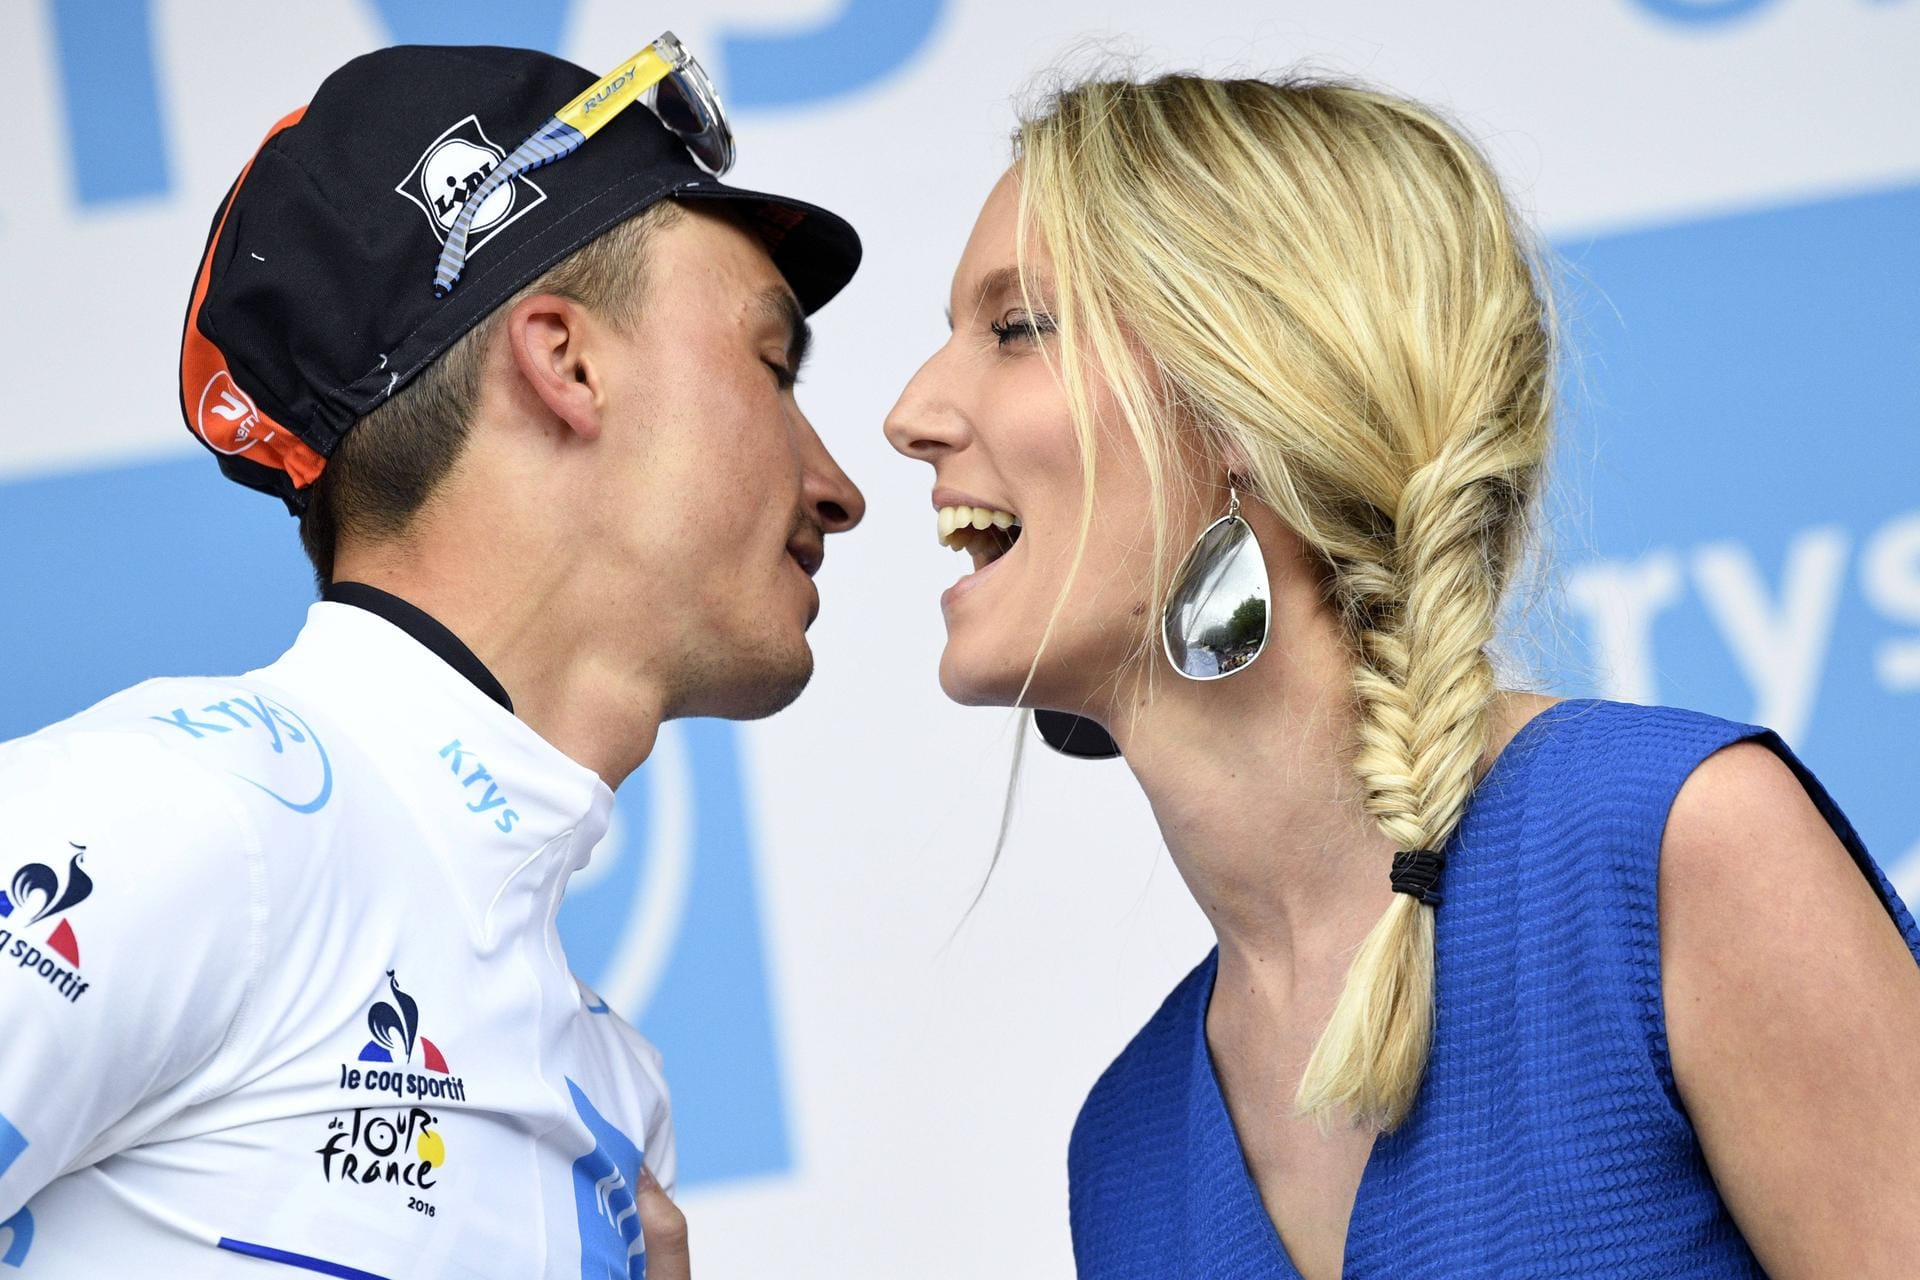 Annäherungsversuch: Der Franzose Julian Alaphilippe kommt auf dem Podium der Tour de France einer Blondine näher.